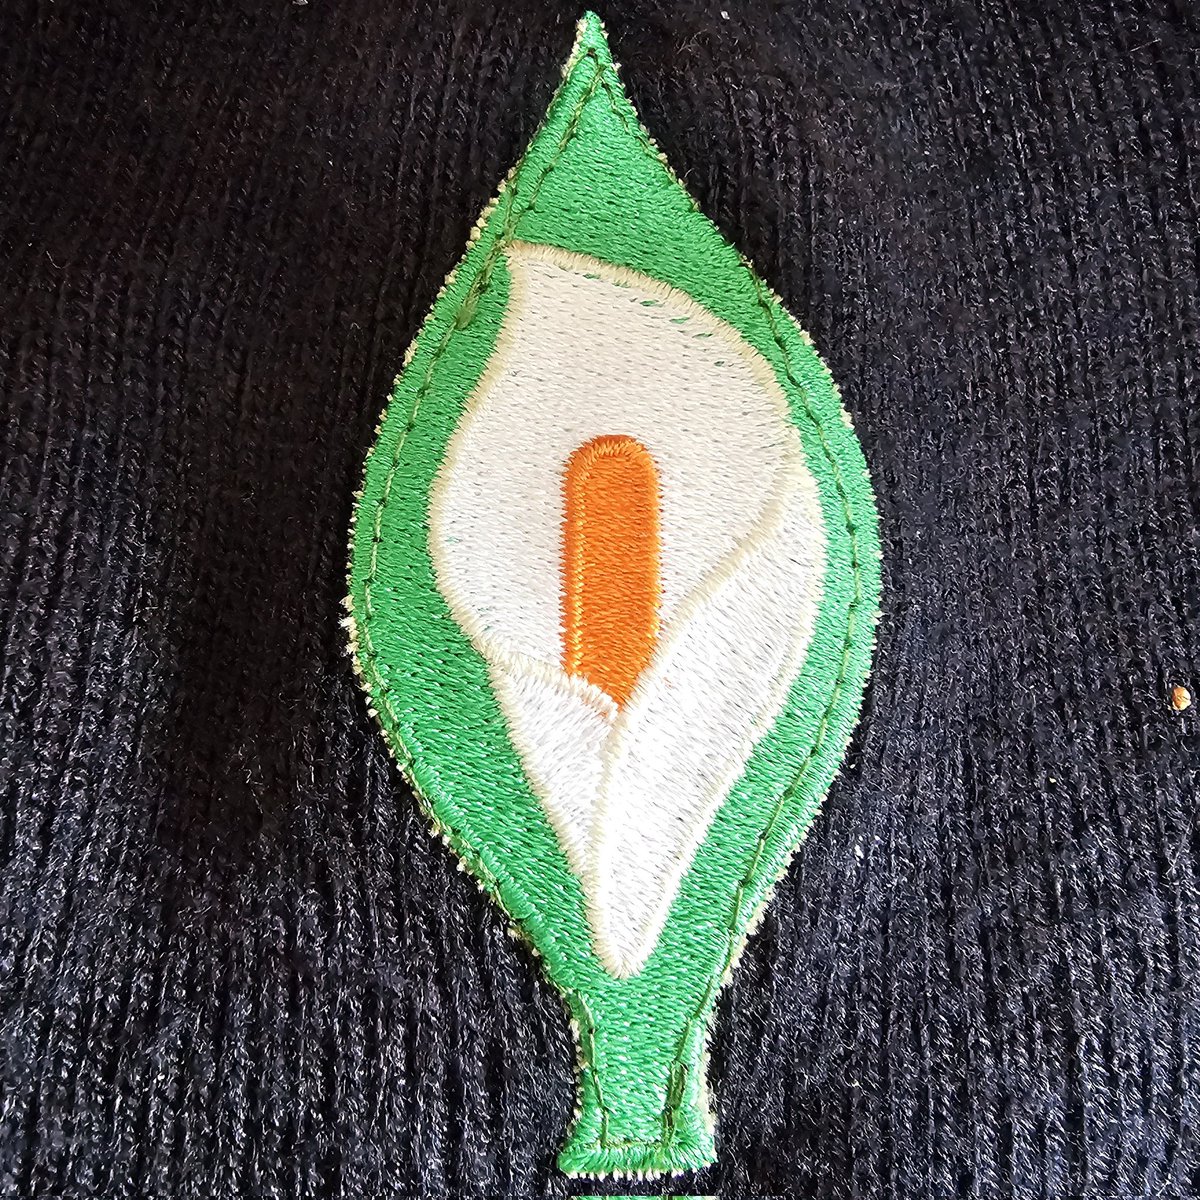 @AbolishDirect Another one for the collection 👌
#irelandisnotfull
#irelandagainstracism